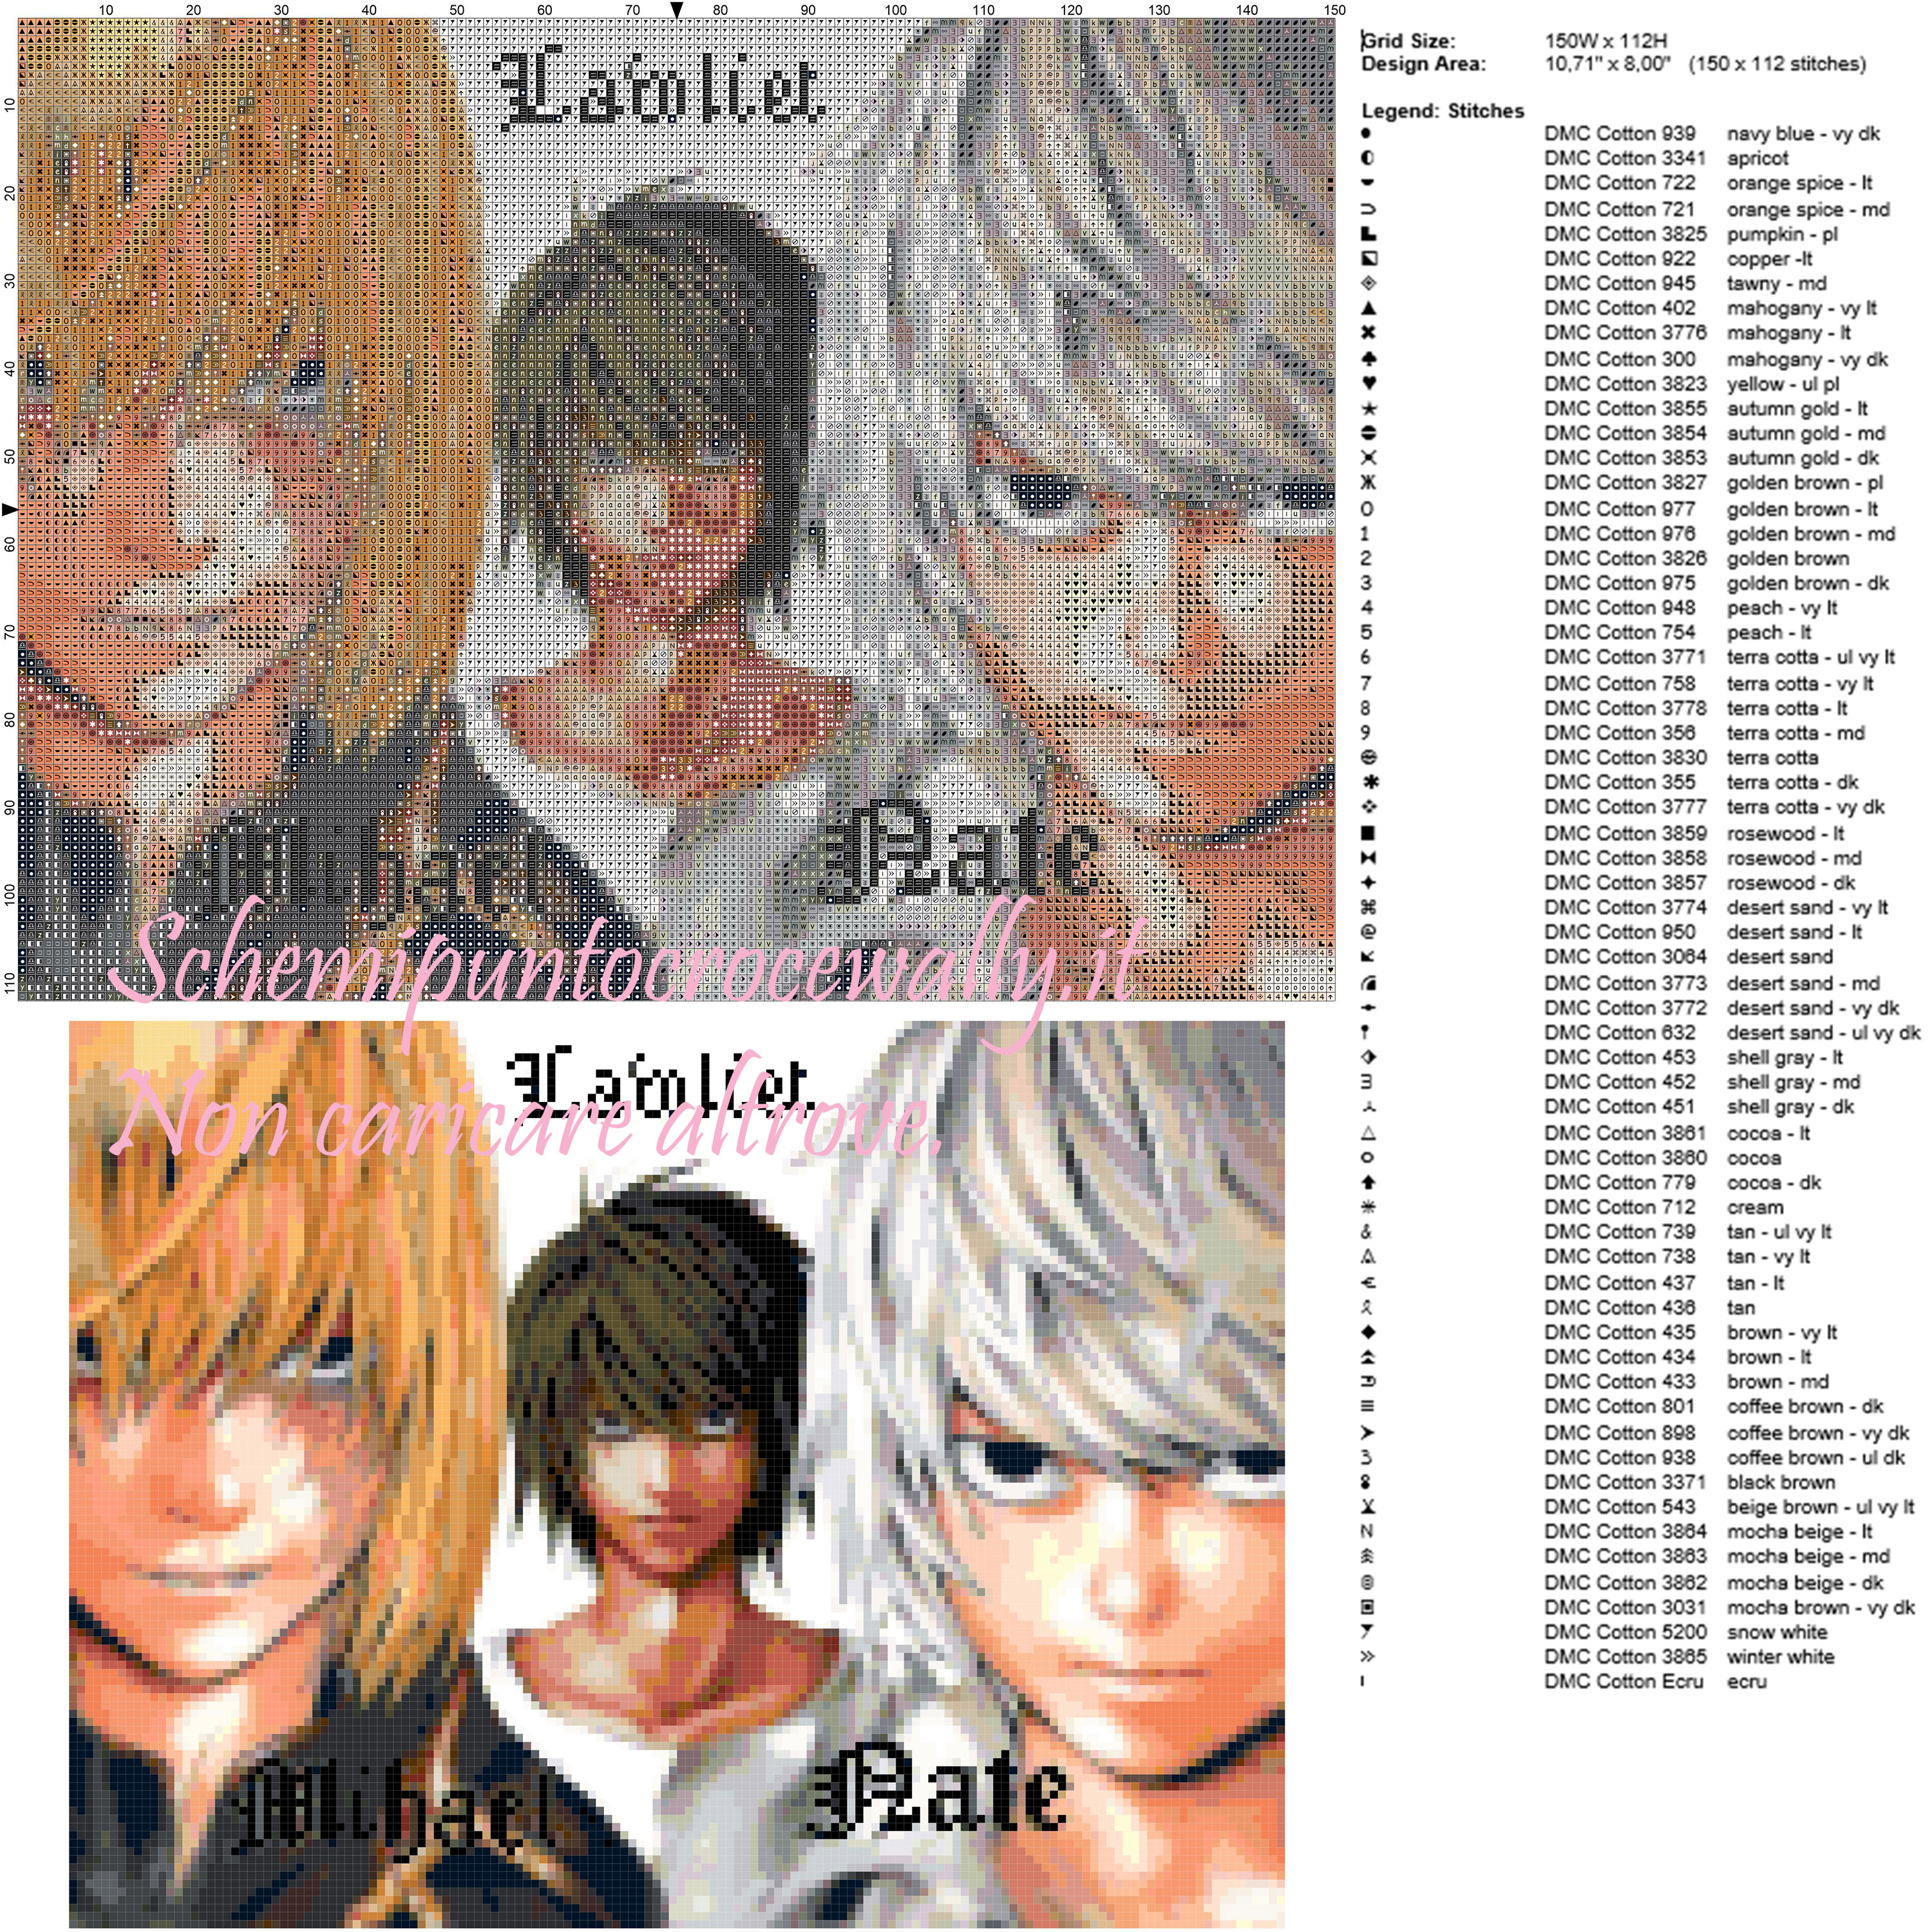 Mihael, Lawliet e Nate (Death Note) schema punto croce 150x112 100 colori